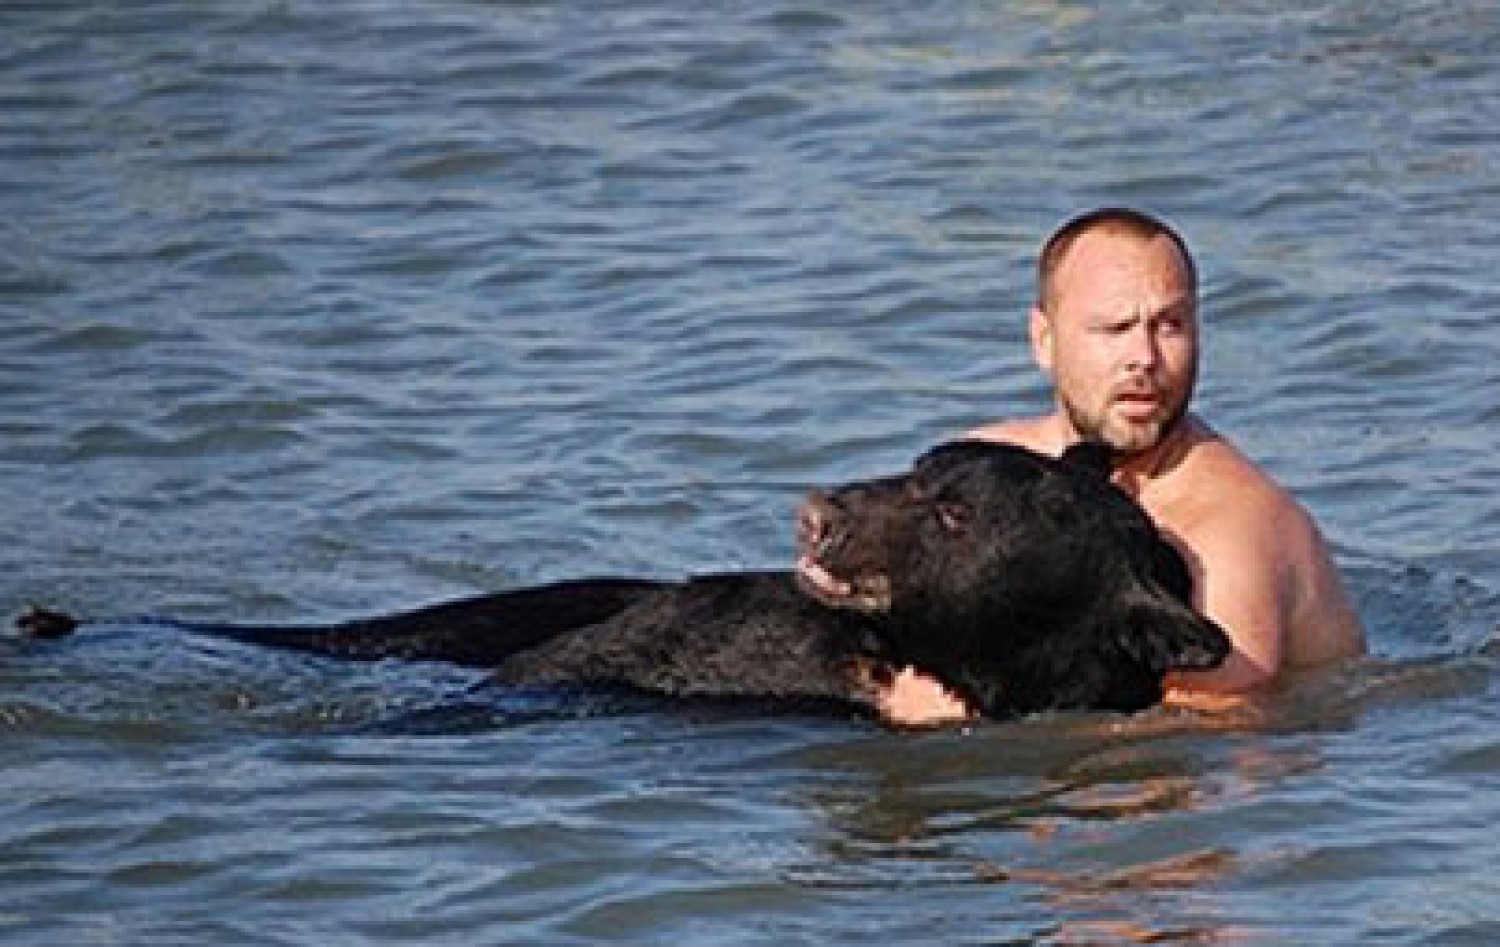 A hatóságok lelőtték a medvét, de a férfi megmentette a fulladástól!